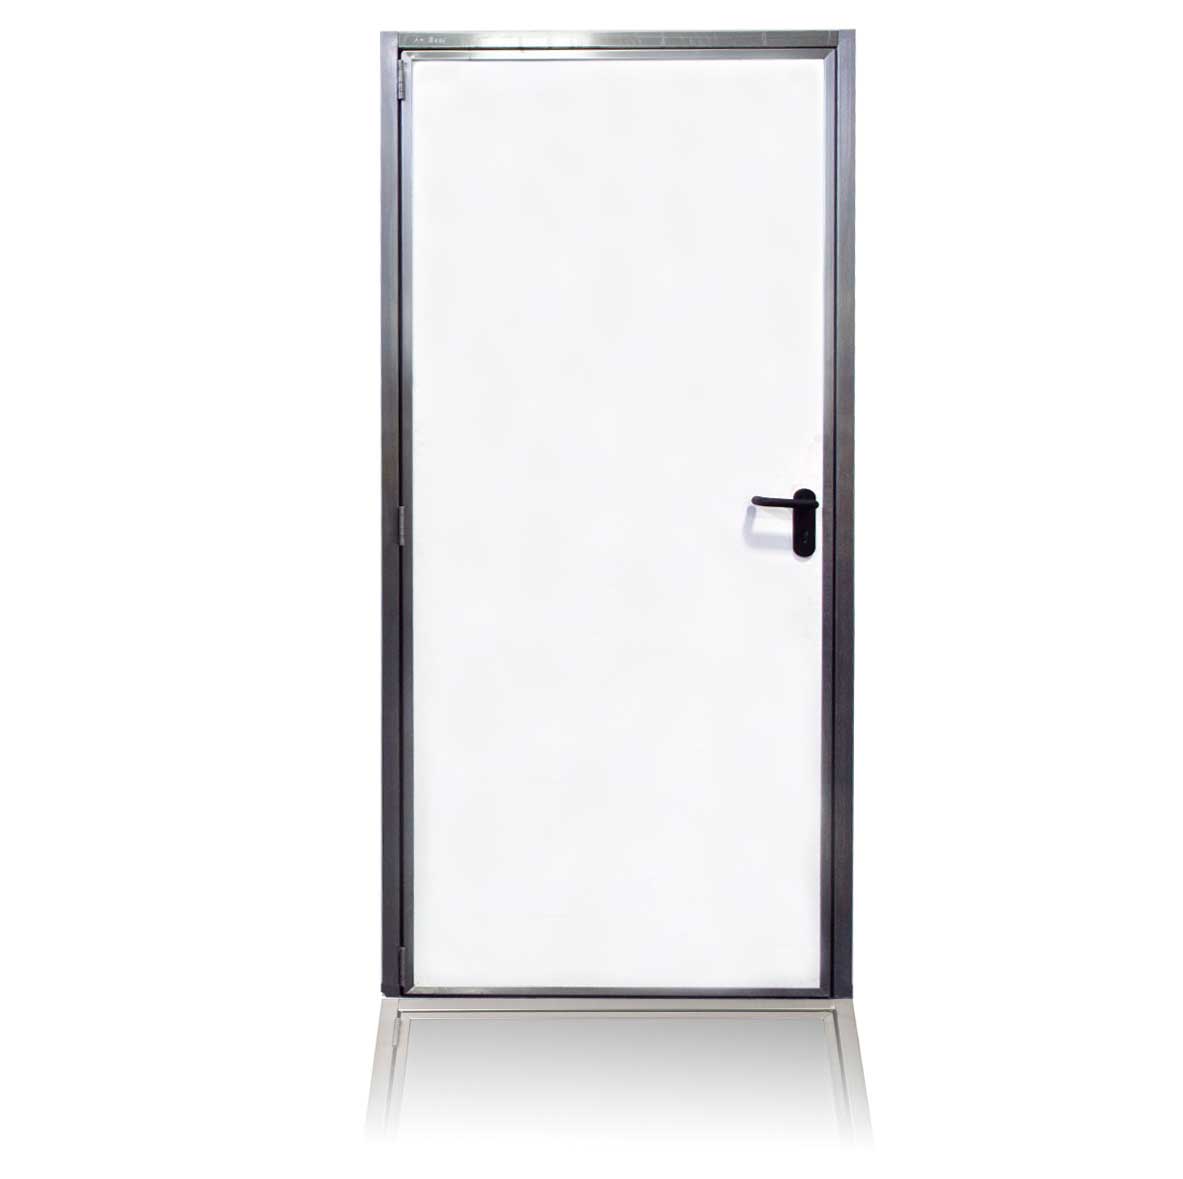 Cleandoor rvs deur